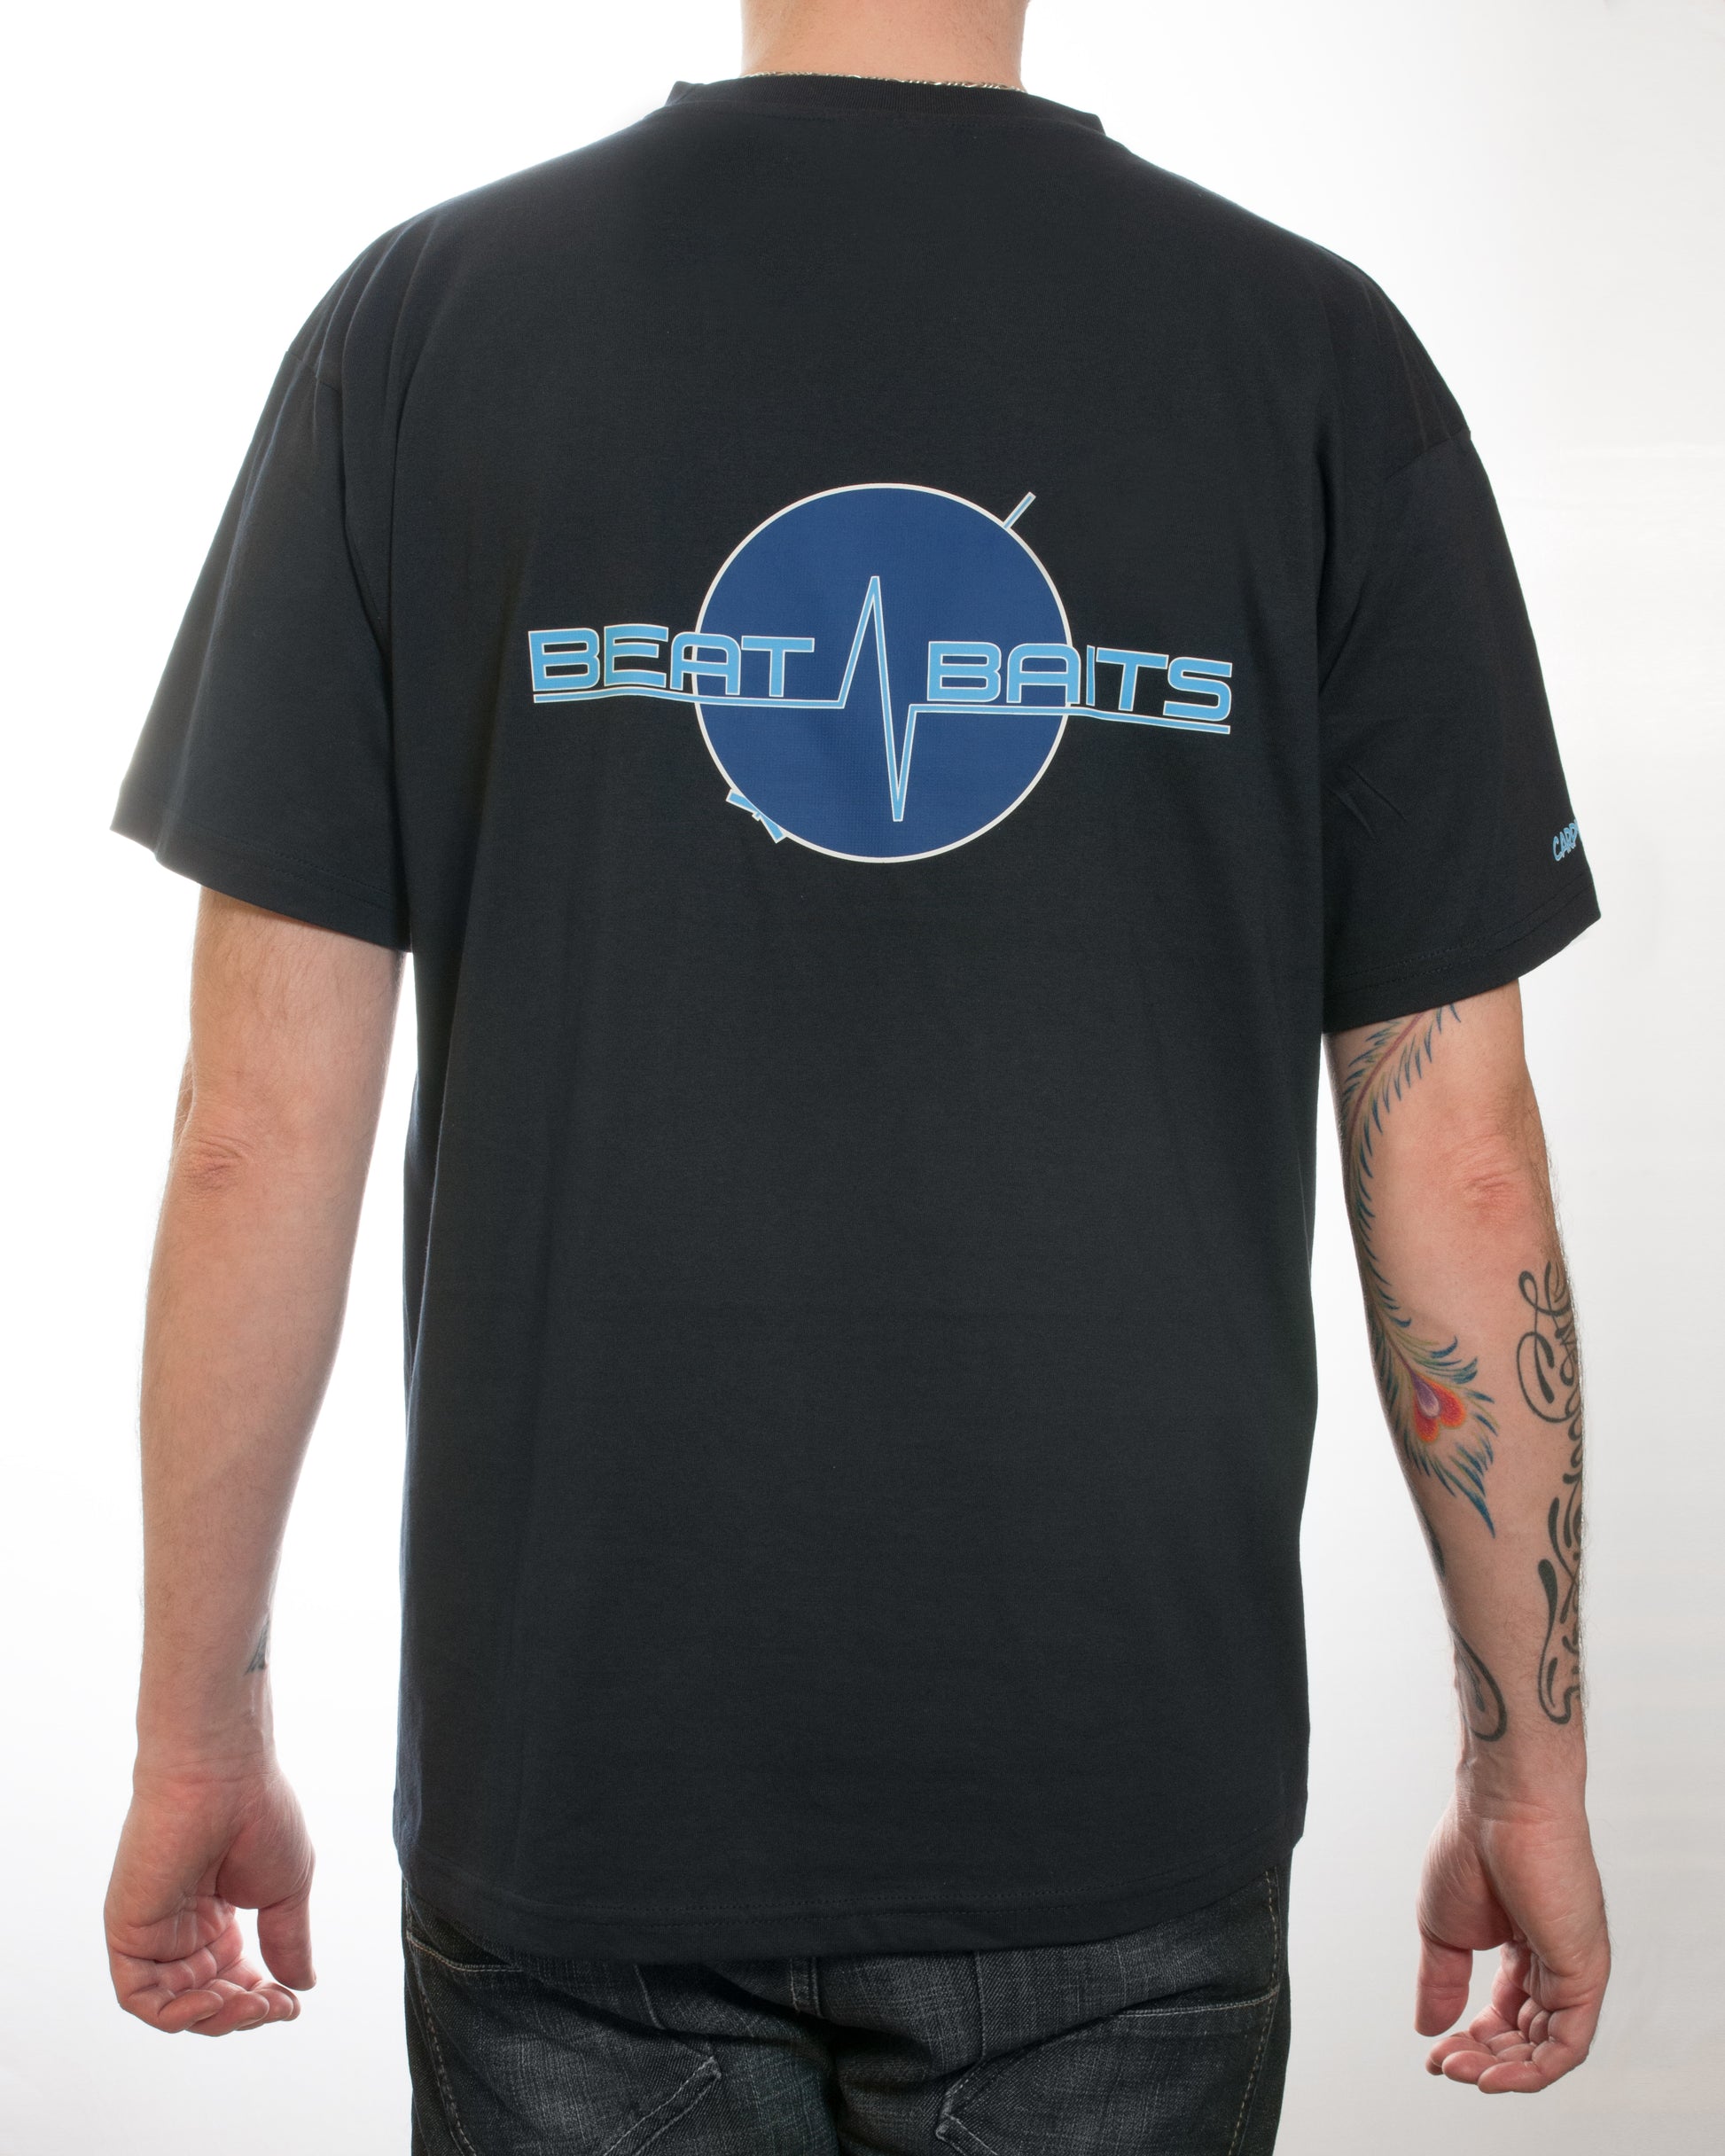 Beat-Baits T-Shirt